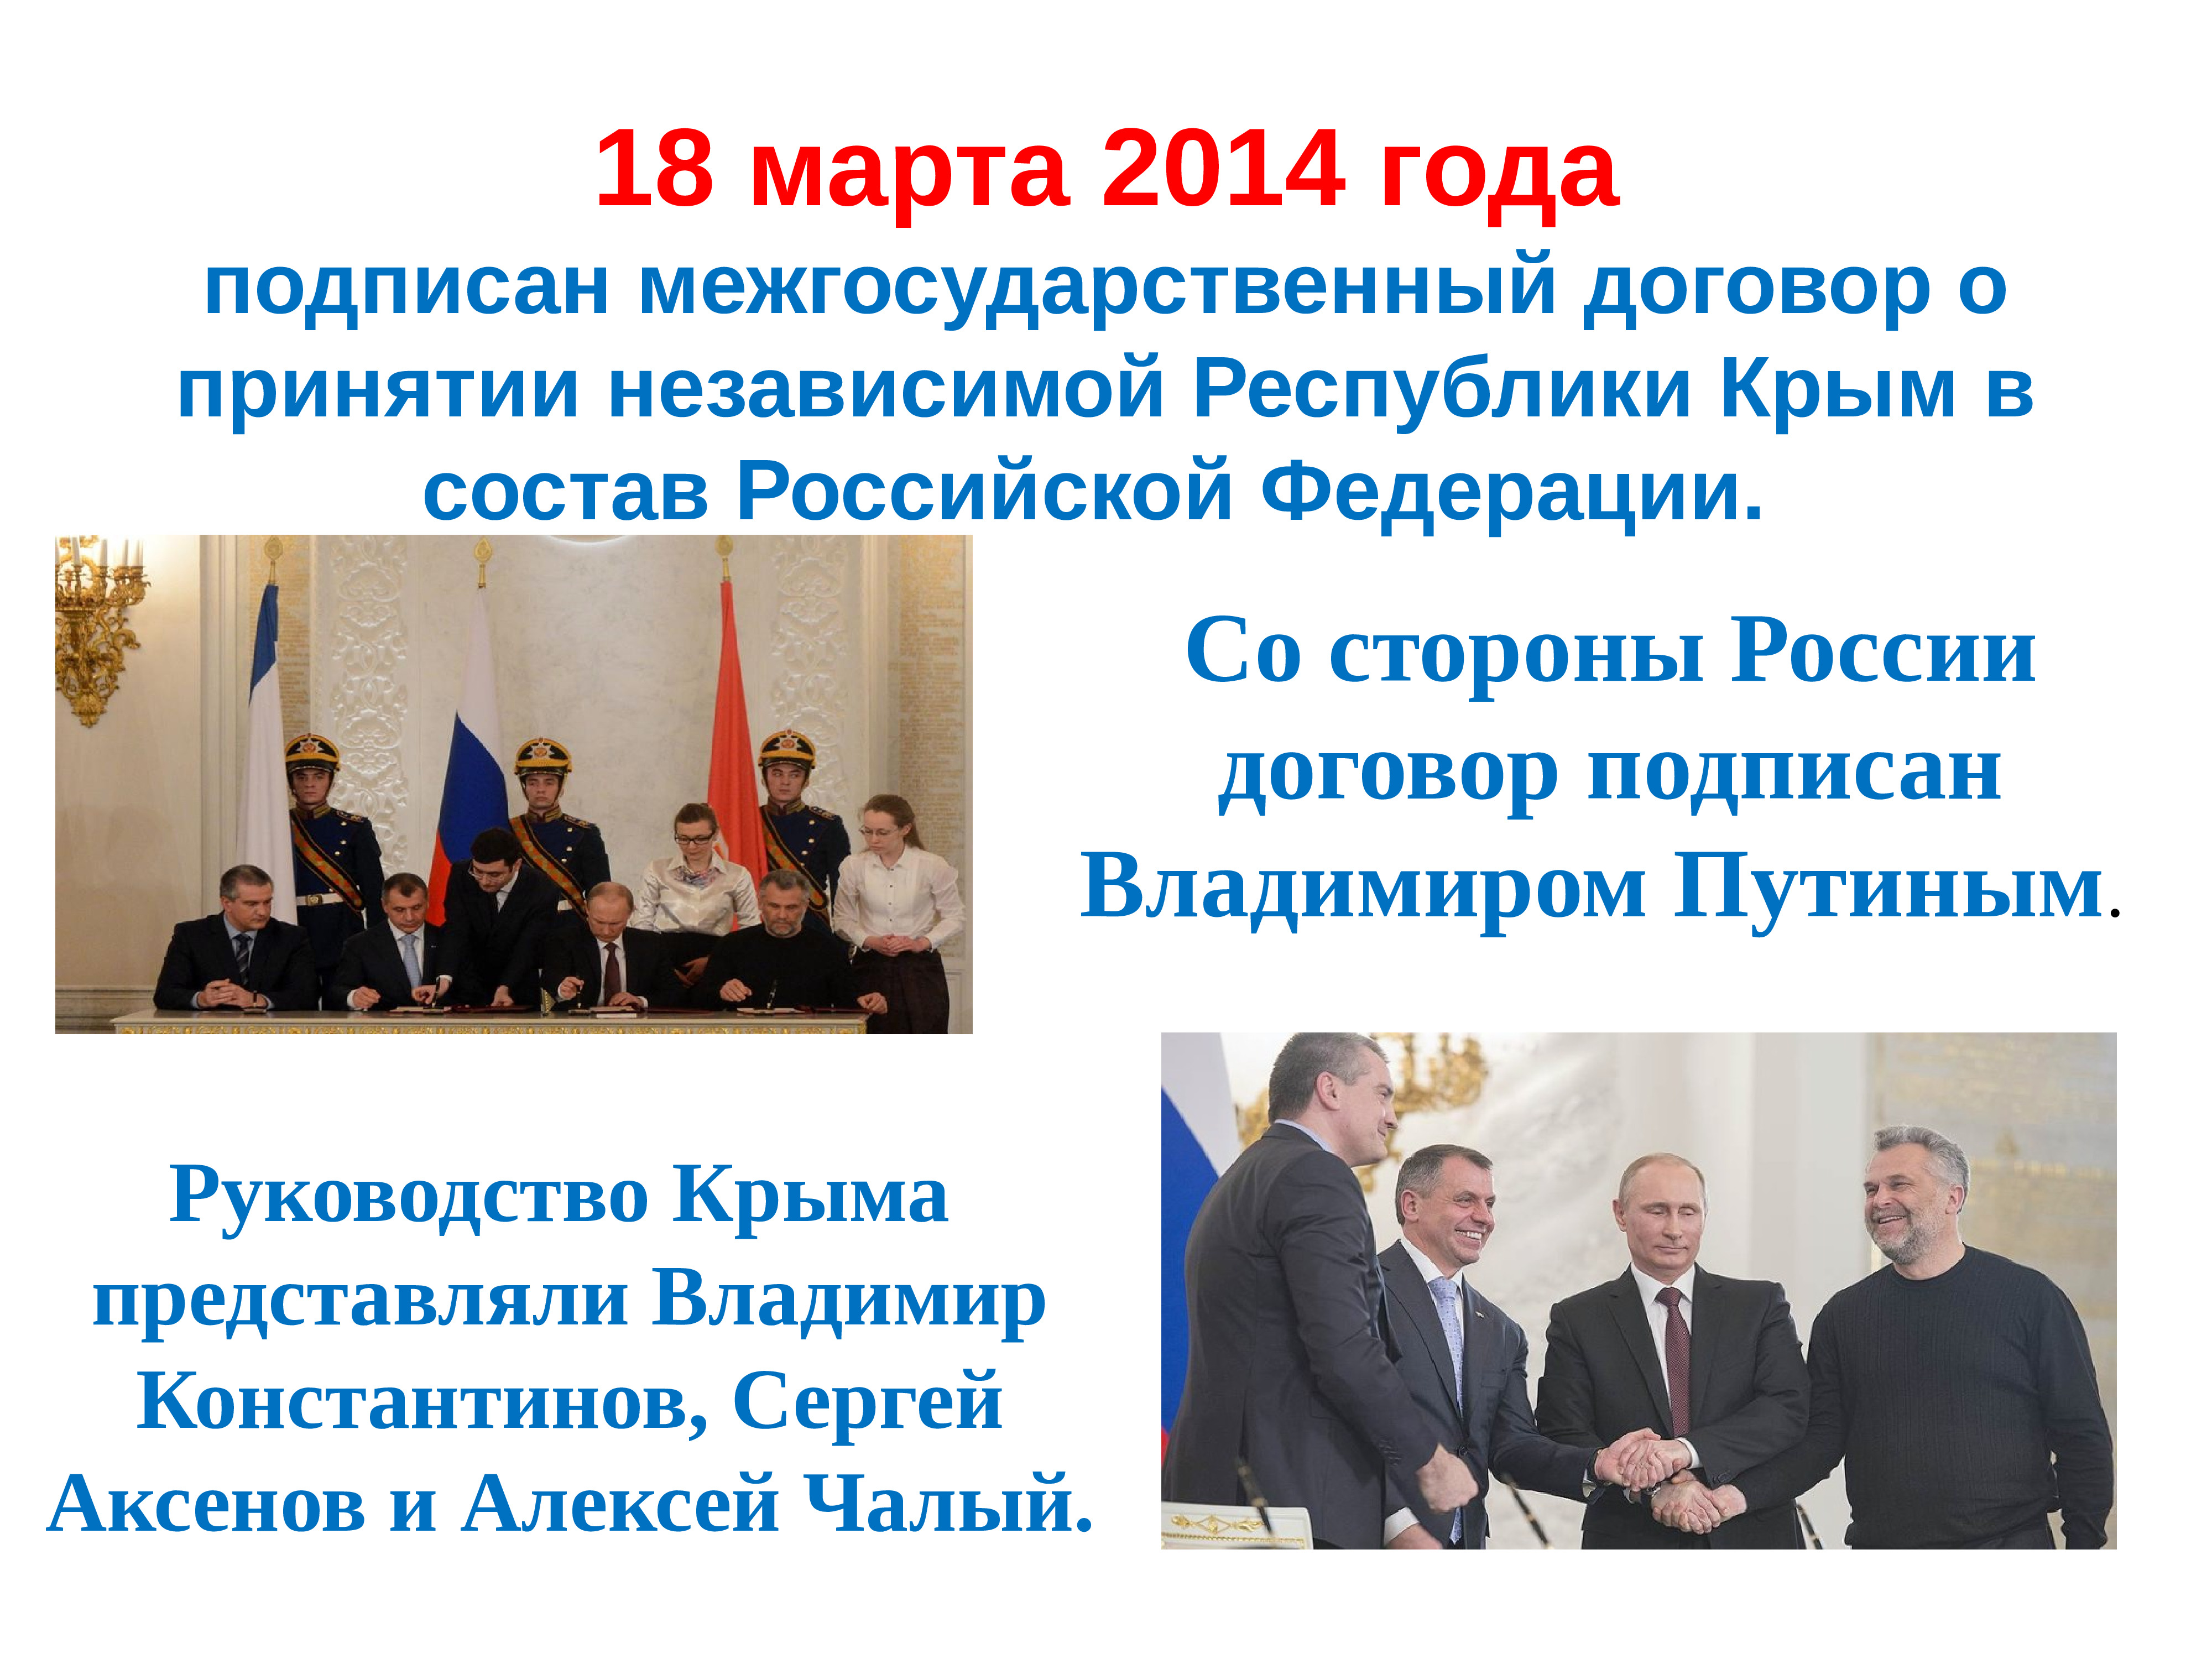 Презентация 10 лет крымской весне. Воссоединение Крыма с Россией.